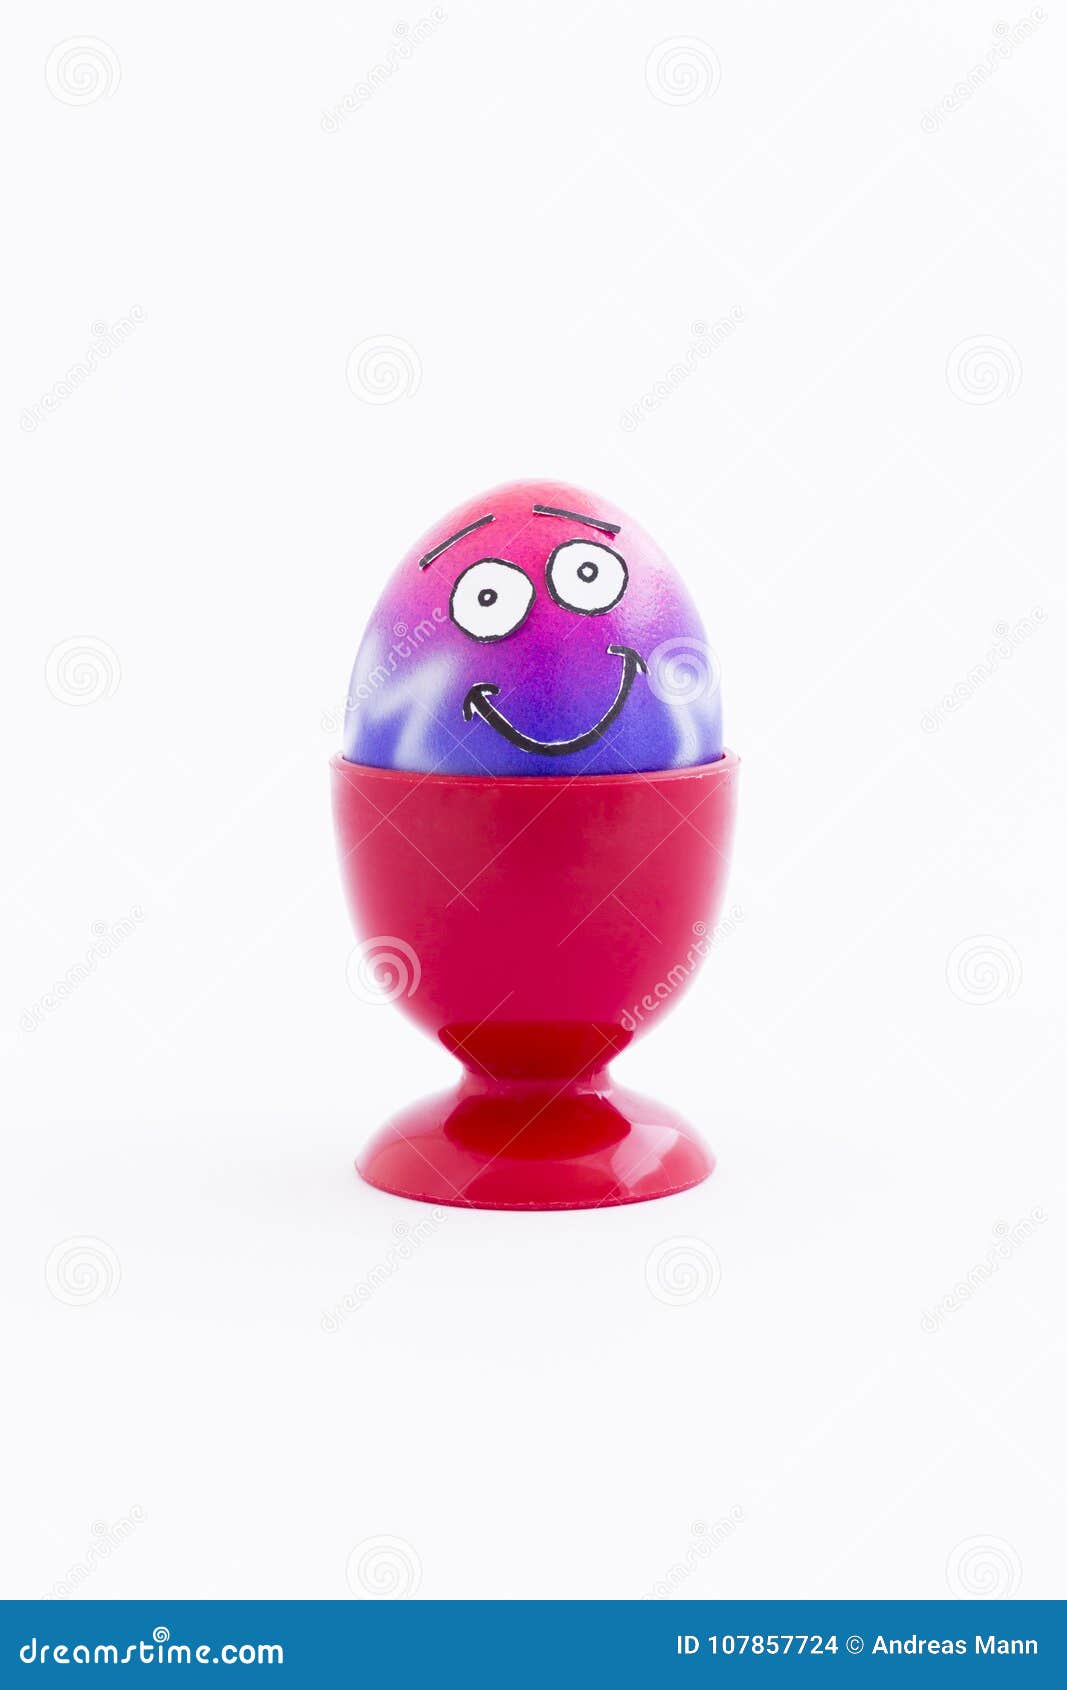 Partito di Pasqua con l'uovo pazzo. Il rosa e la porpora hanno dipinto l'uovo di Pasqua con il fronte divertente di stile del fumetto in un portauovo di plastica rosso ed in un fondo bianco